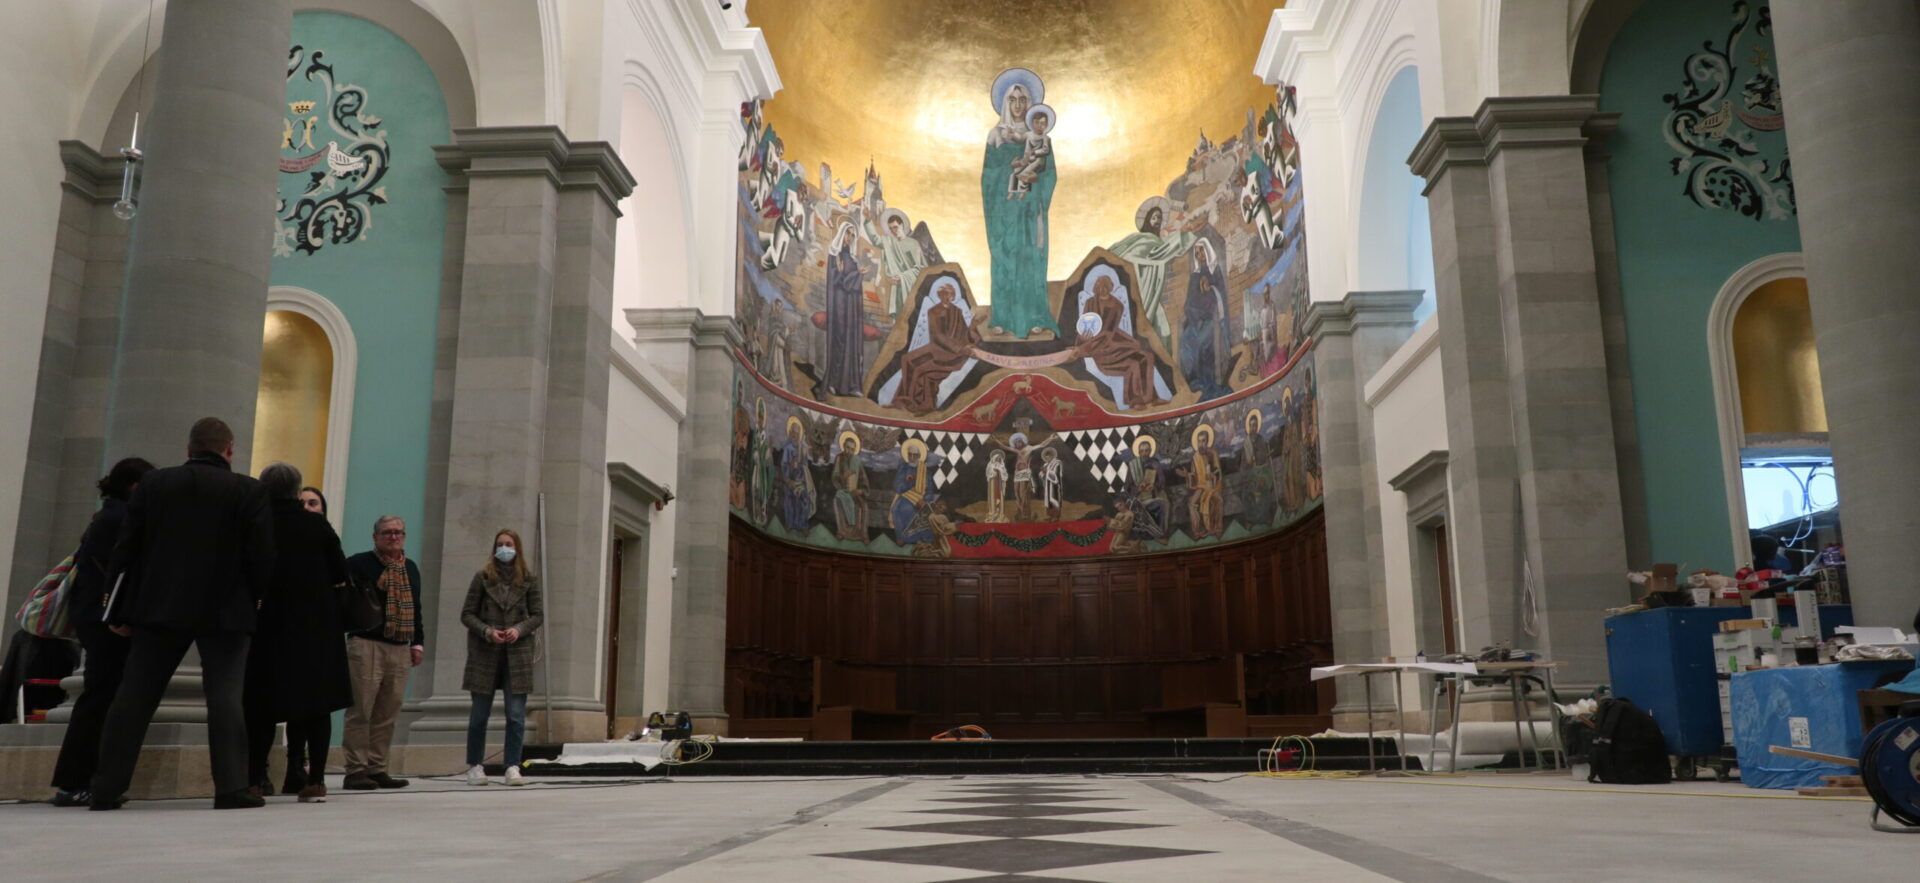 La fresque de Gino Severini apparaît dans sa beauté, dans la basilique Notre-Dame, rénovée dans sa partie antérieure | © Bernard Litzler